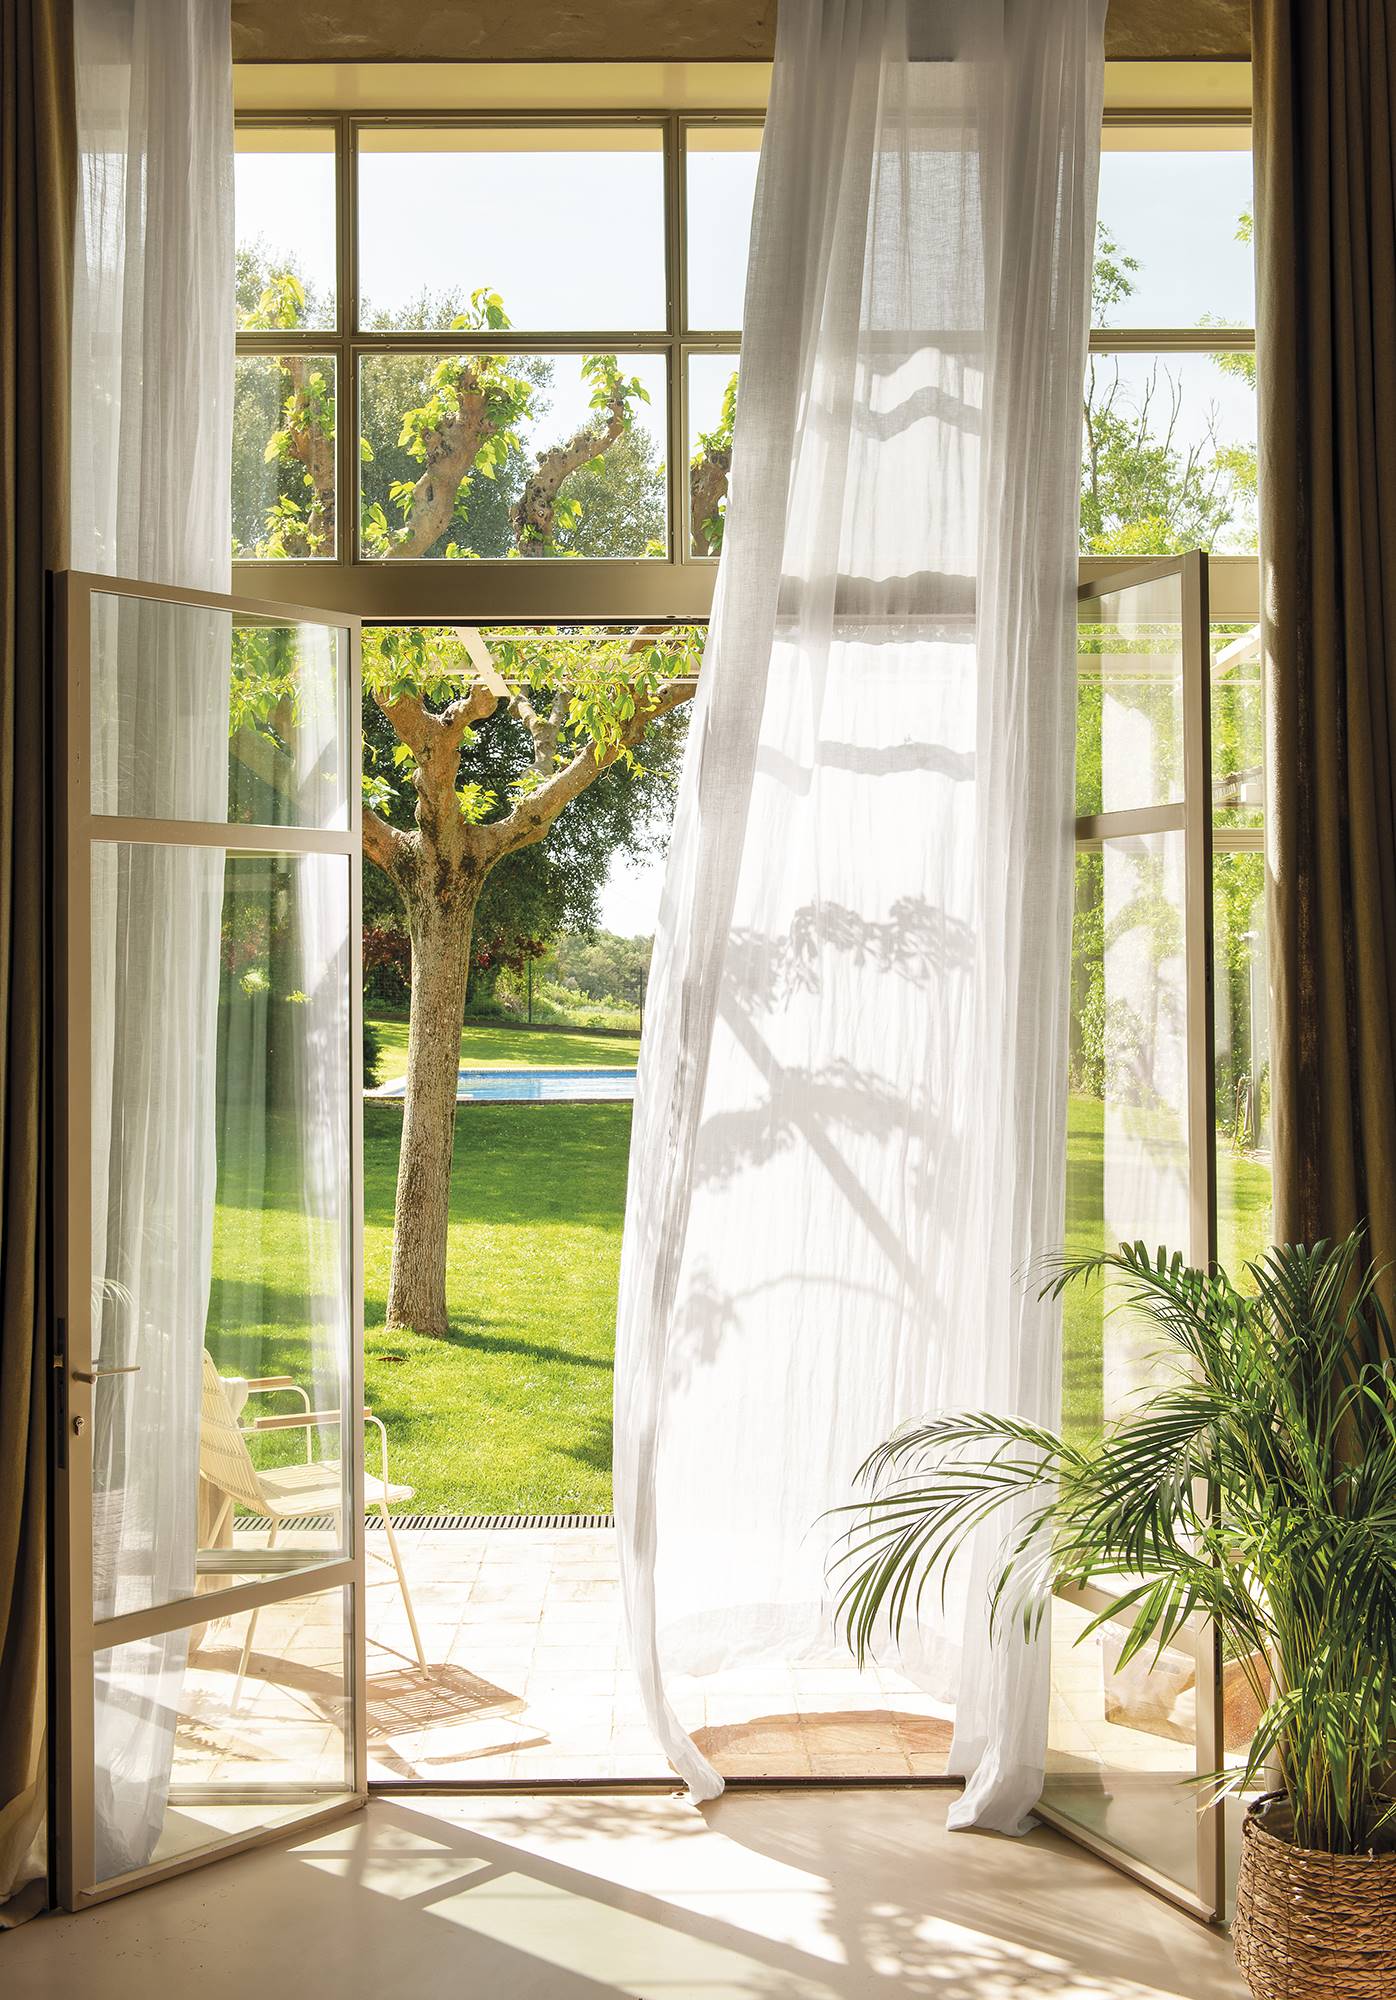 Ventanal con cortina vaporosa y vistas al jardín. 